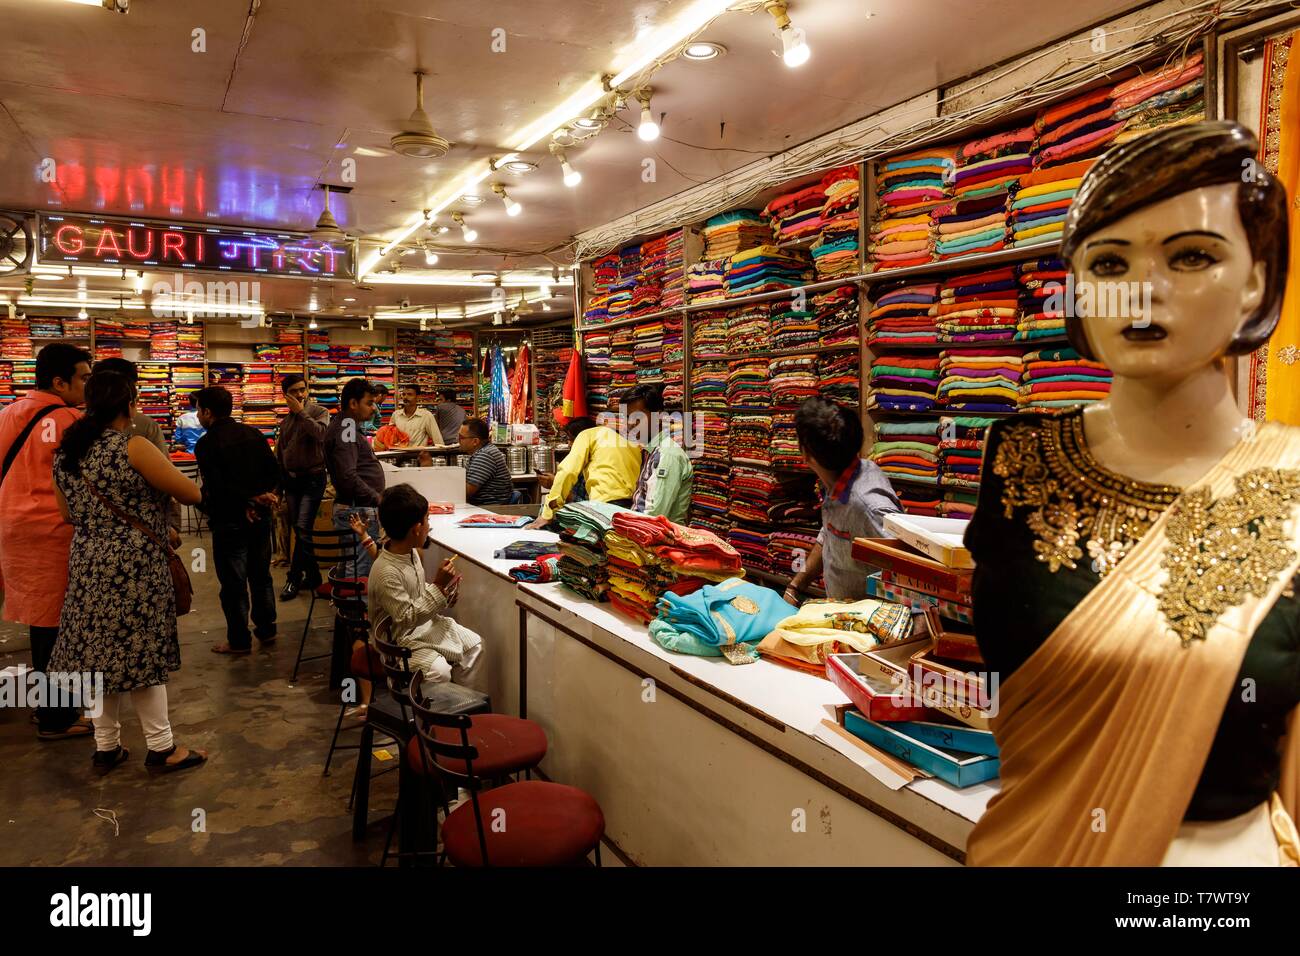 India, Uttar Pradesh, Varanasi, saris shop Stock Photo